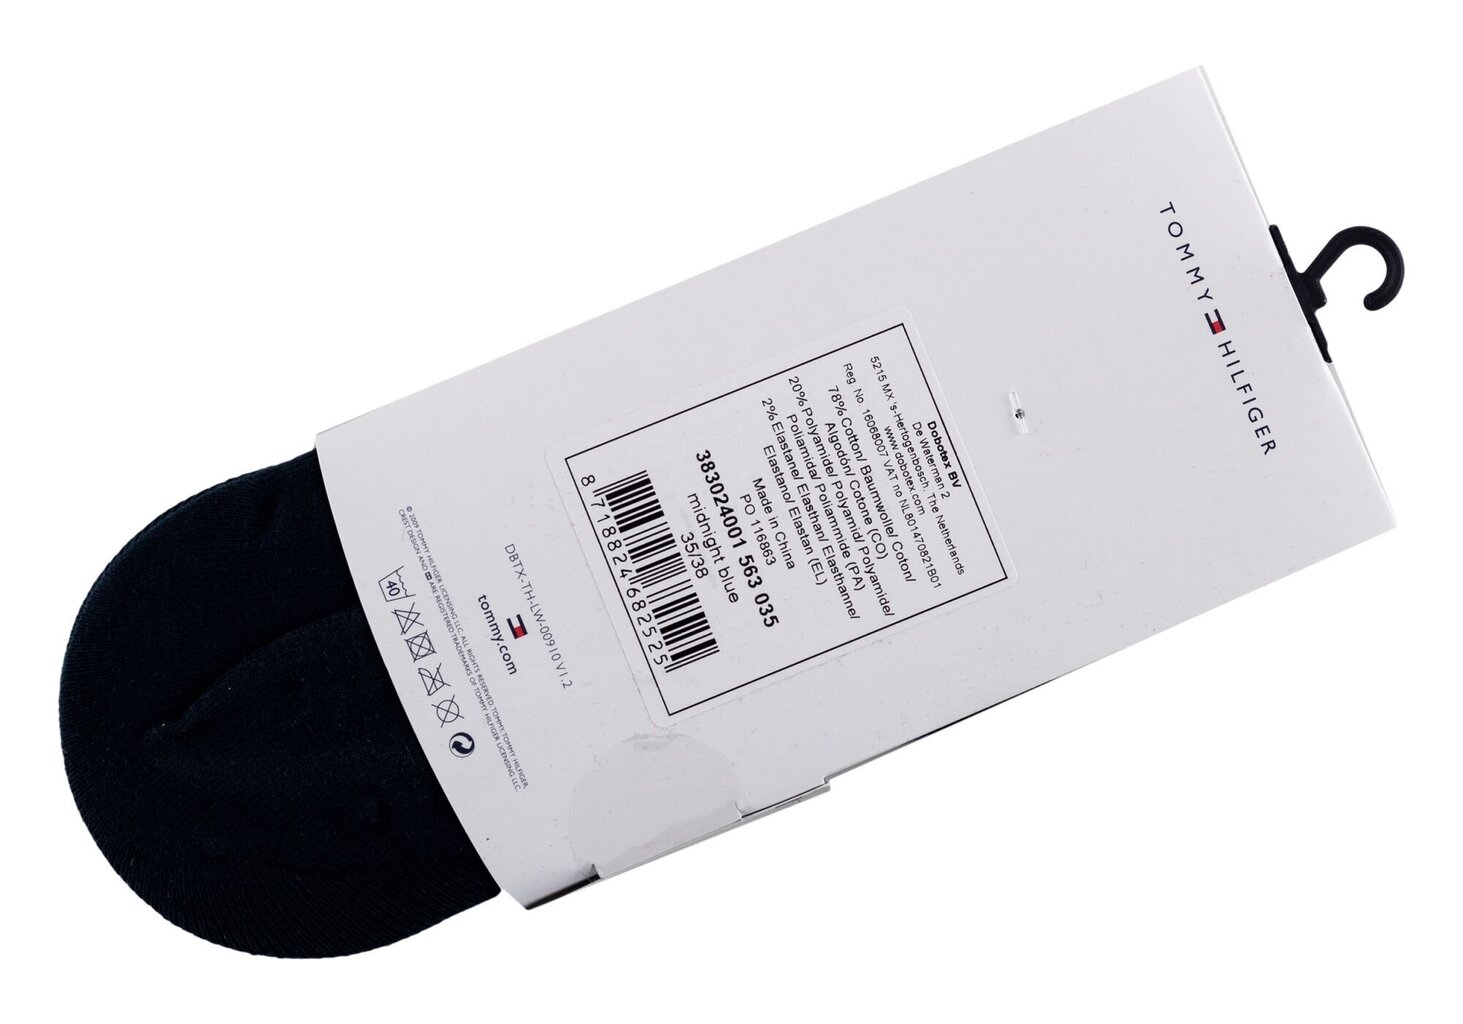 Moteriškos kojinės-pėdutės Tommy Hilfiger, 2 poros, tamsiai mėlynos 383024001 563 14386 35-38 kaina ir informacija | Moteriškos kojinės | pigu.lt